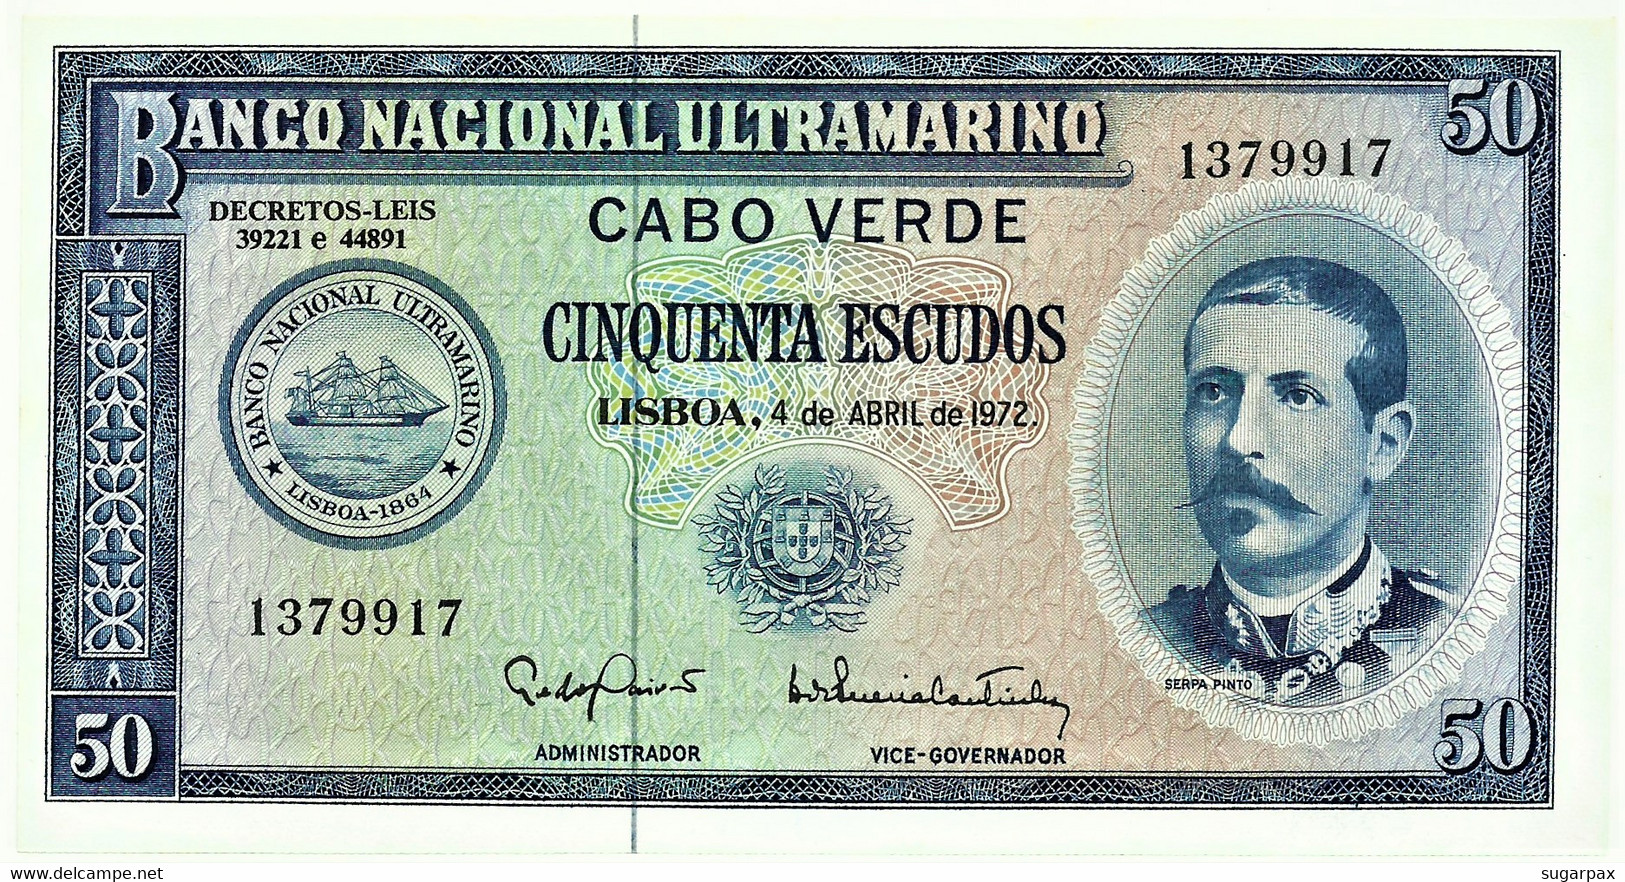 CAPE VERDE - 50 ESCUDOS - 04.04.1972 - Pick 53 - Unc. - Serpa Pinto - Portugal Cabo - Capo Verde